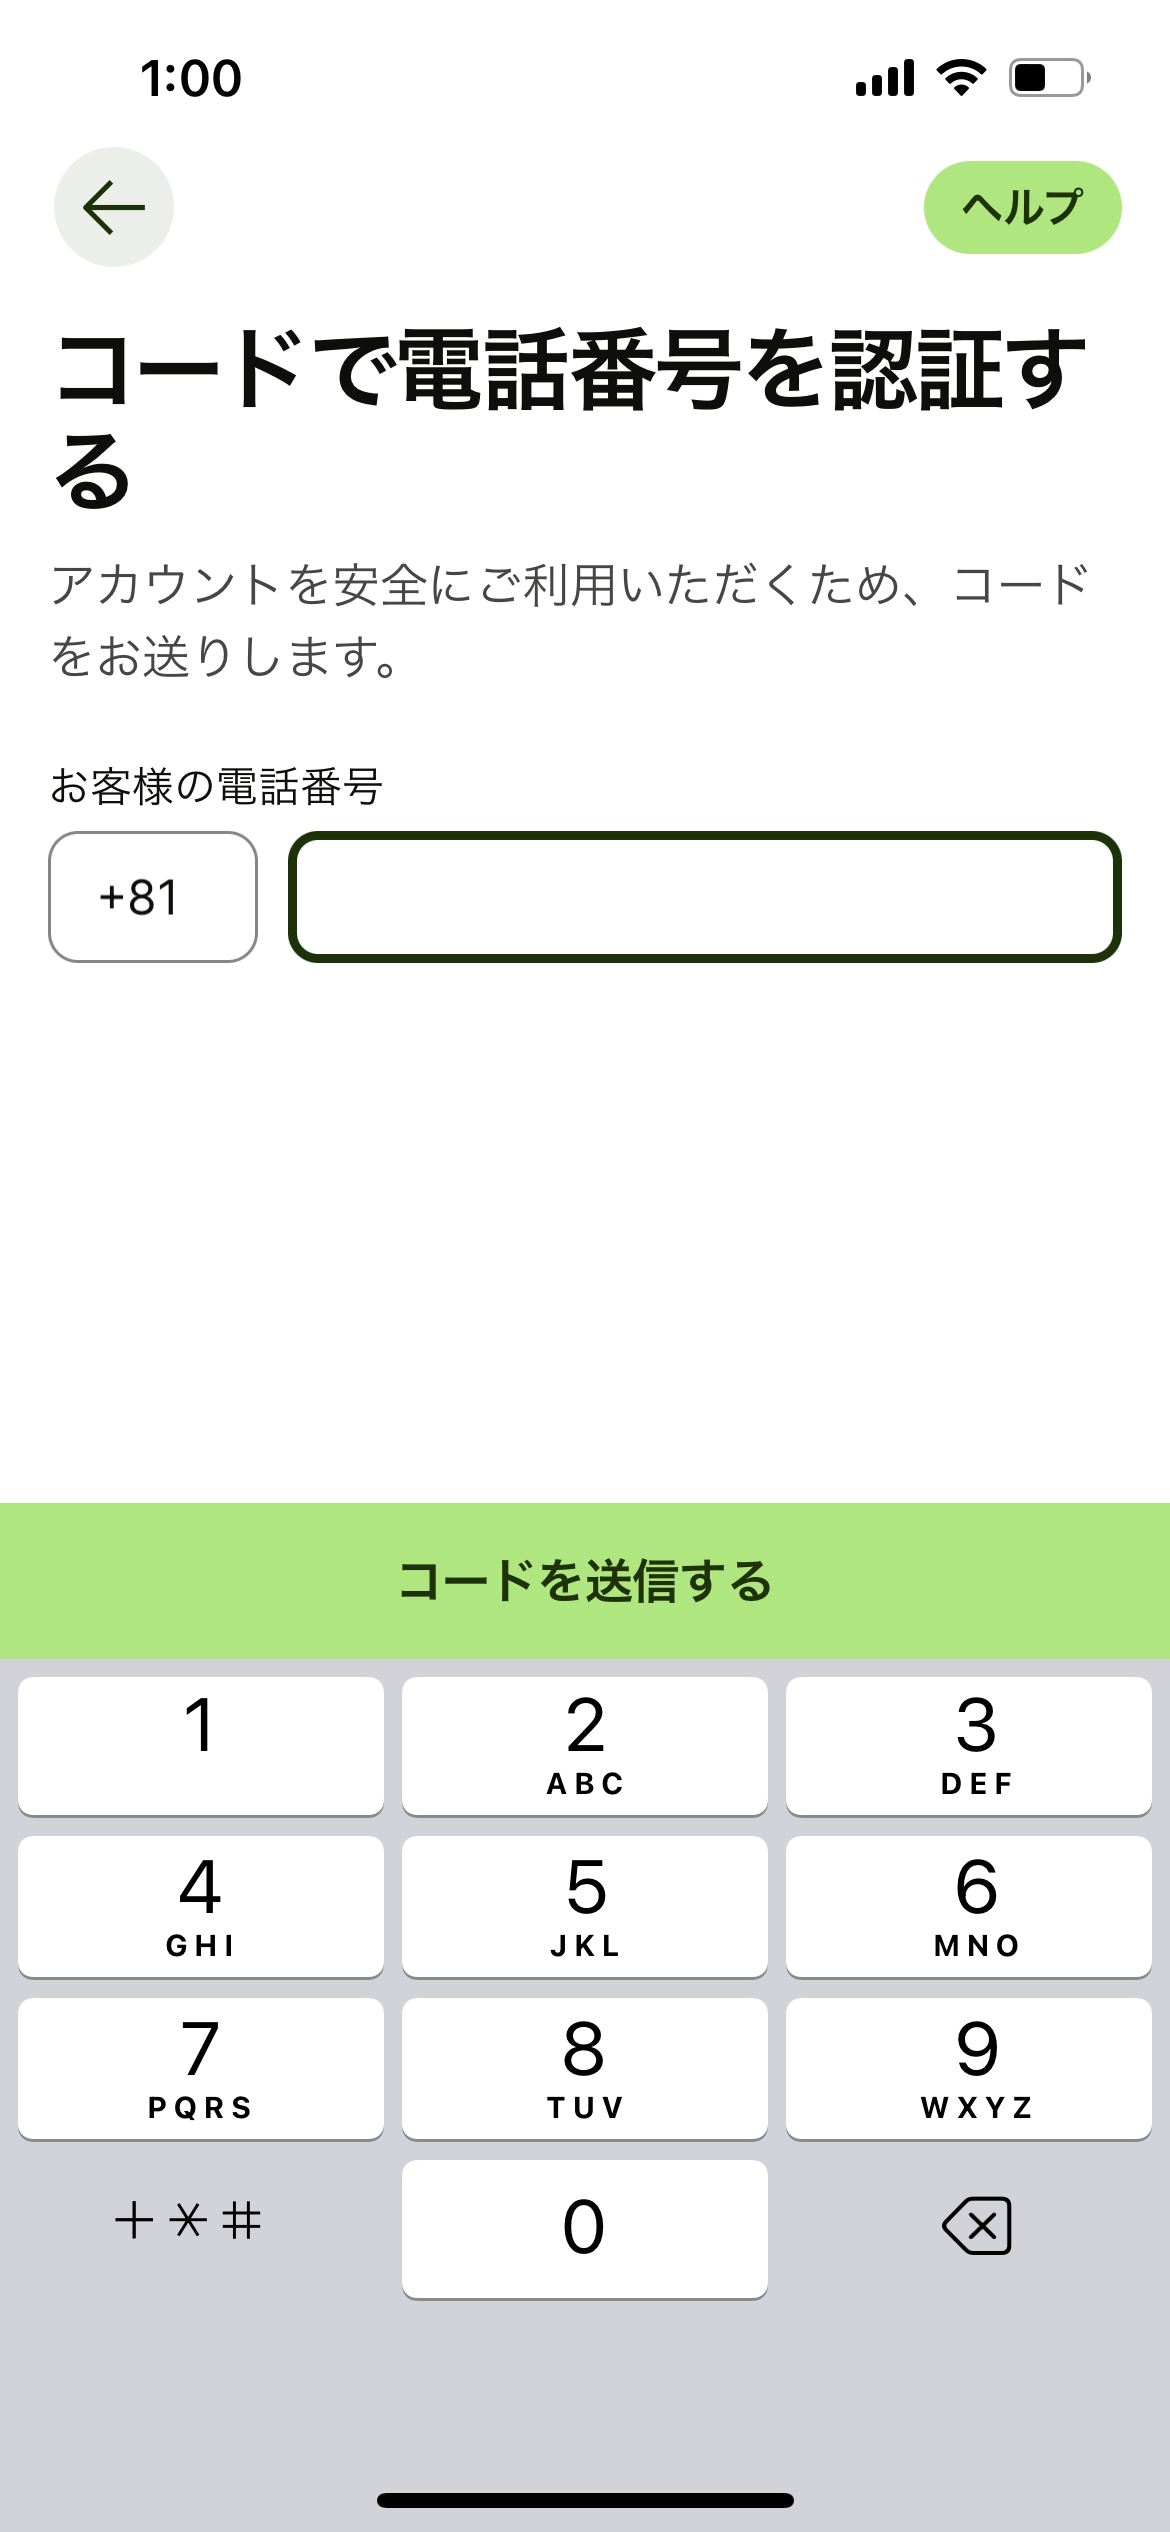 日本から韓国への送金サービスWise（ワイズ）のアカウント作成方法